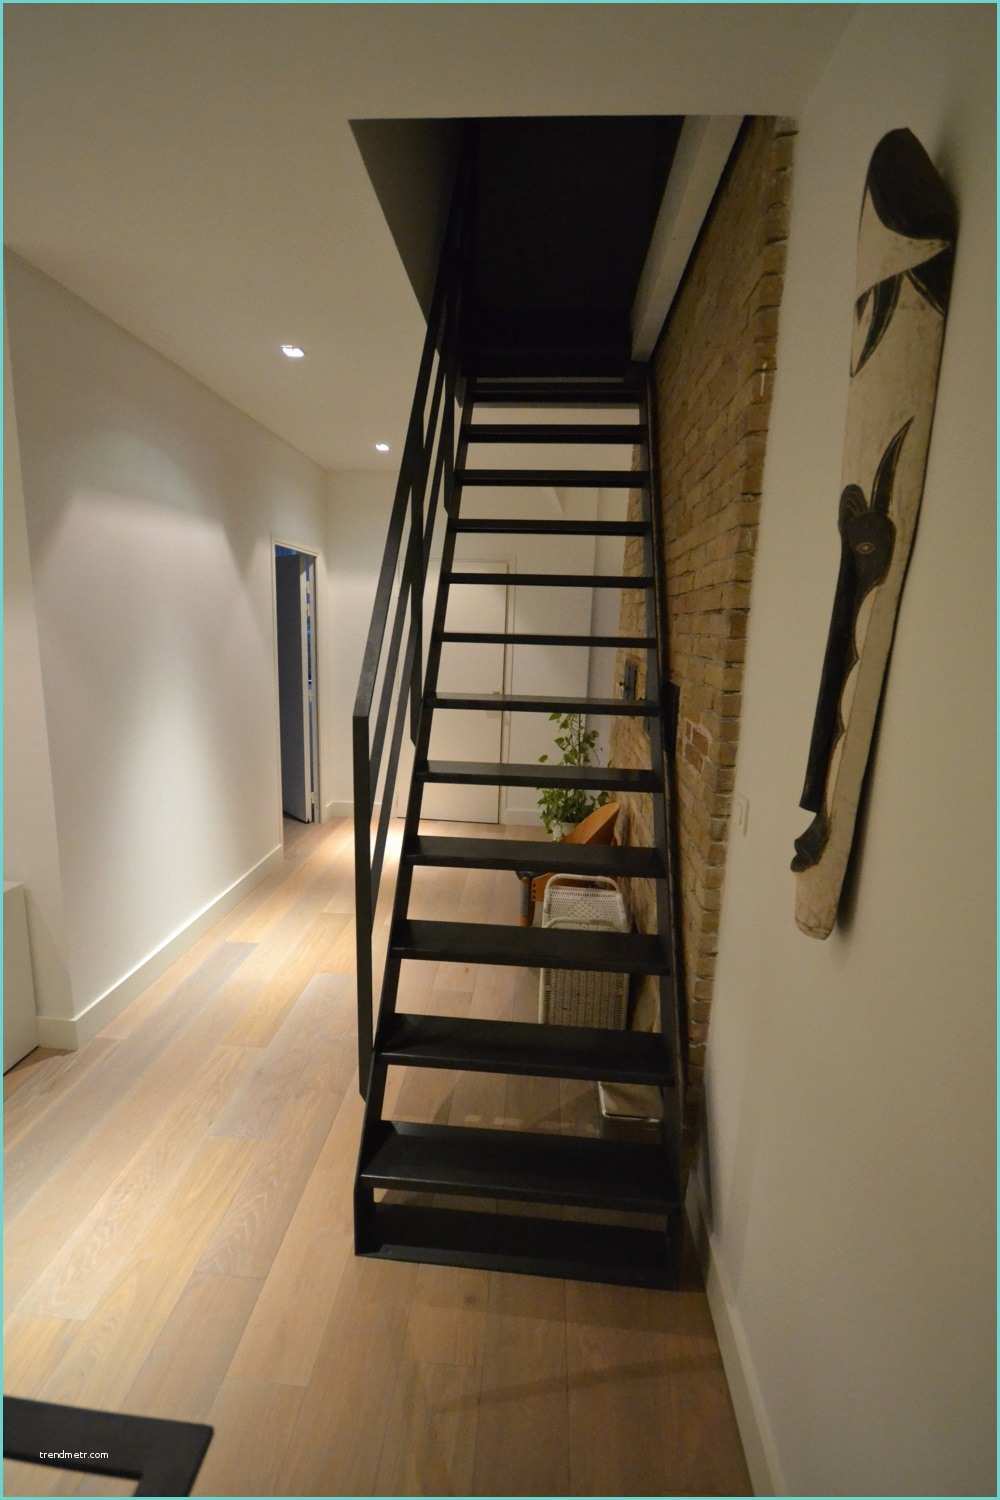 Escalier Pliant Pour Mezzanine Echelle Escalier Latest Echelle Pour Escaliers with